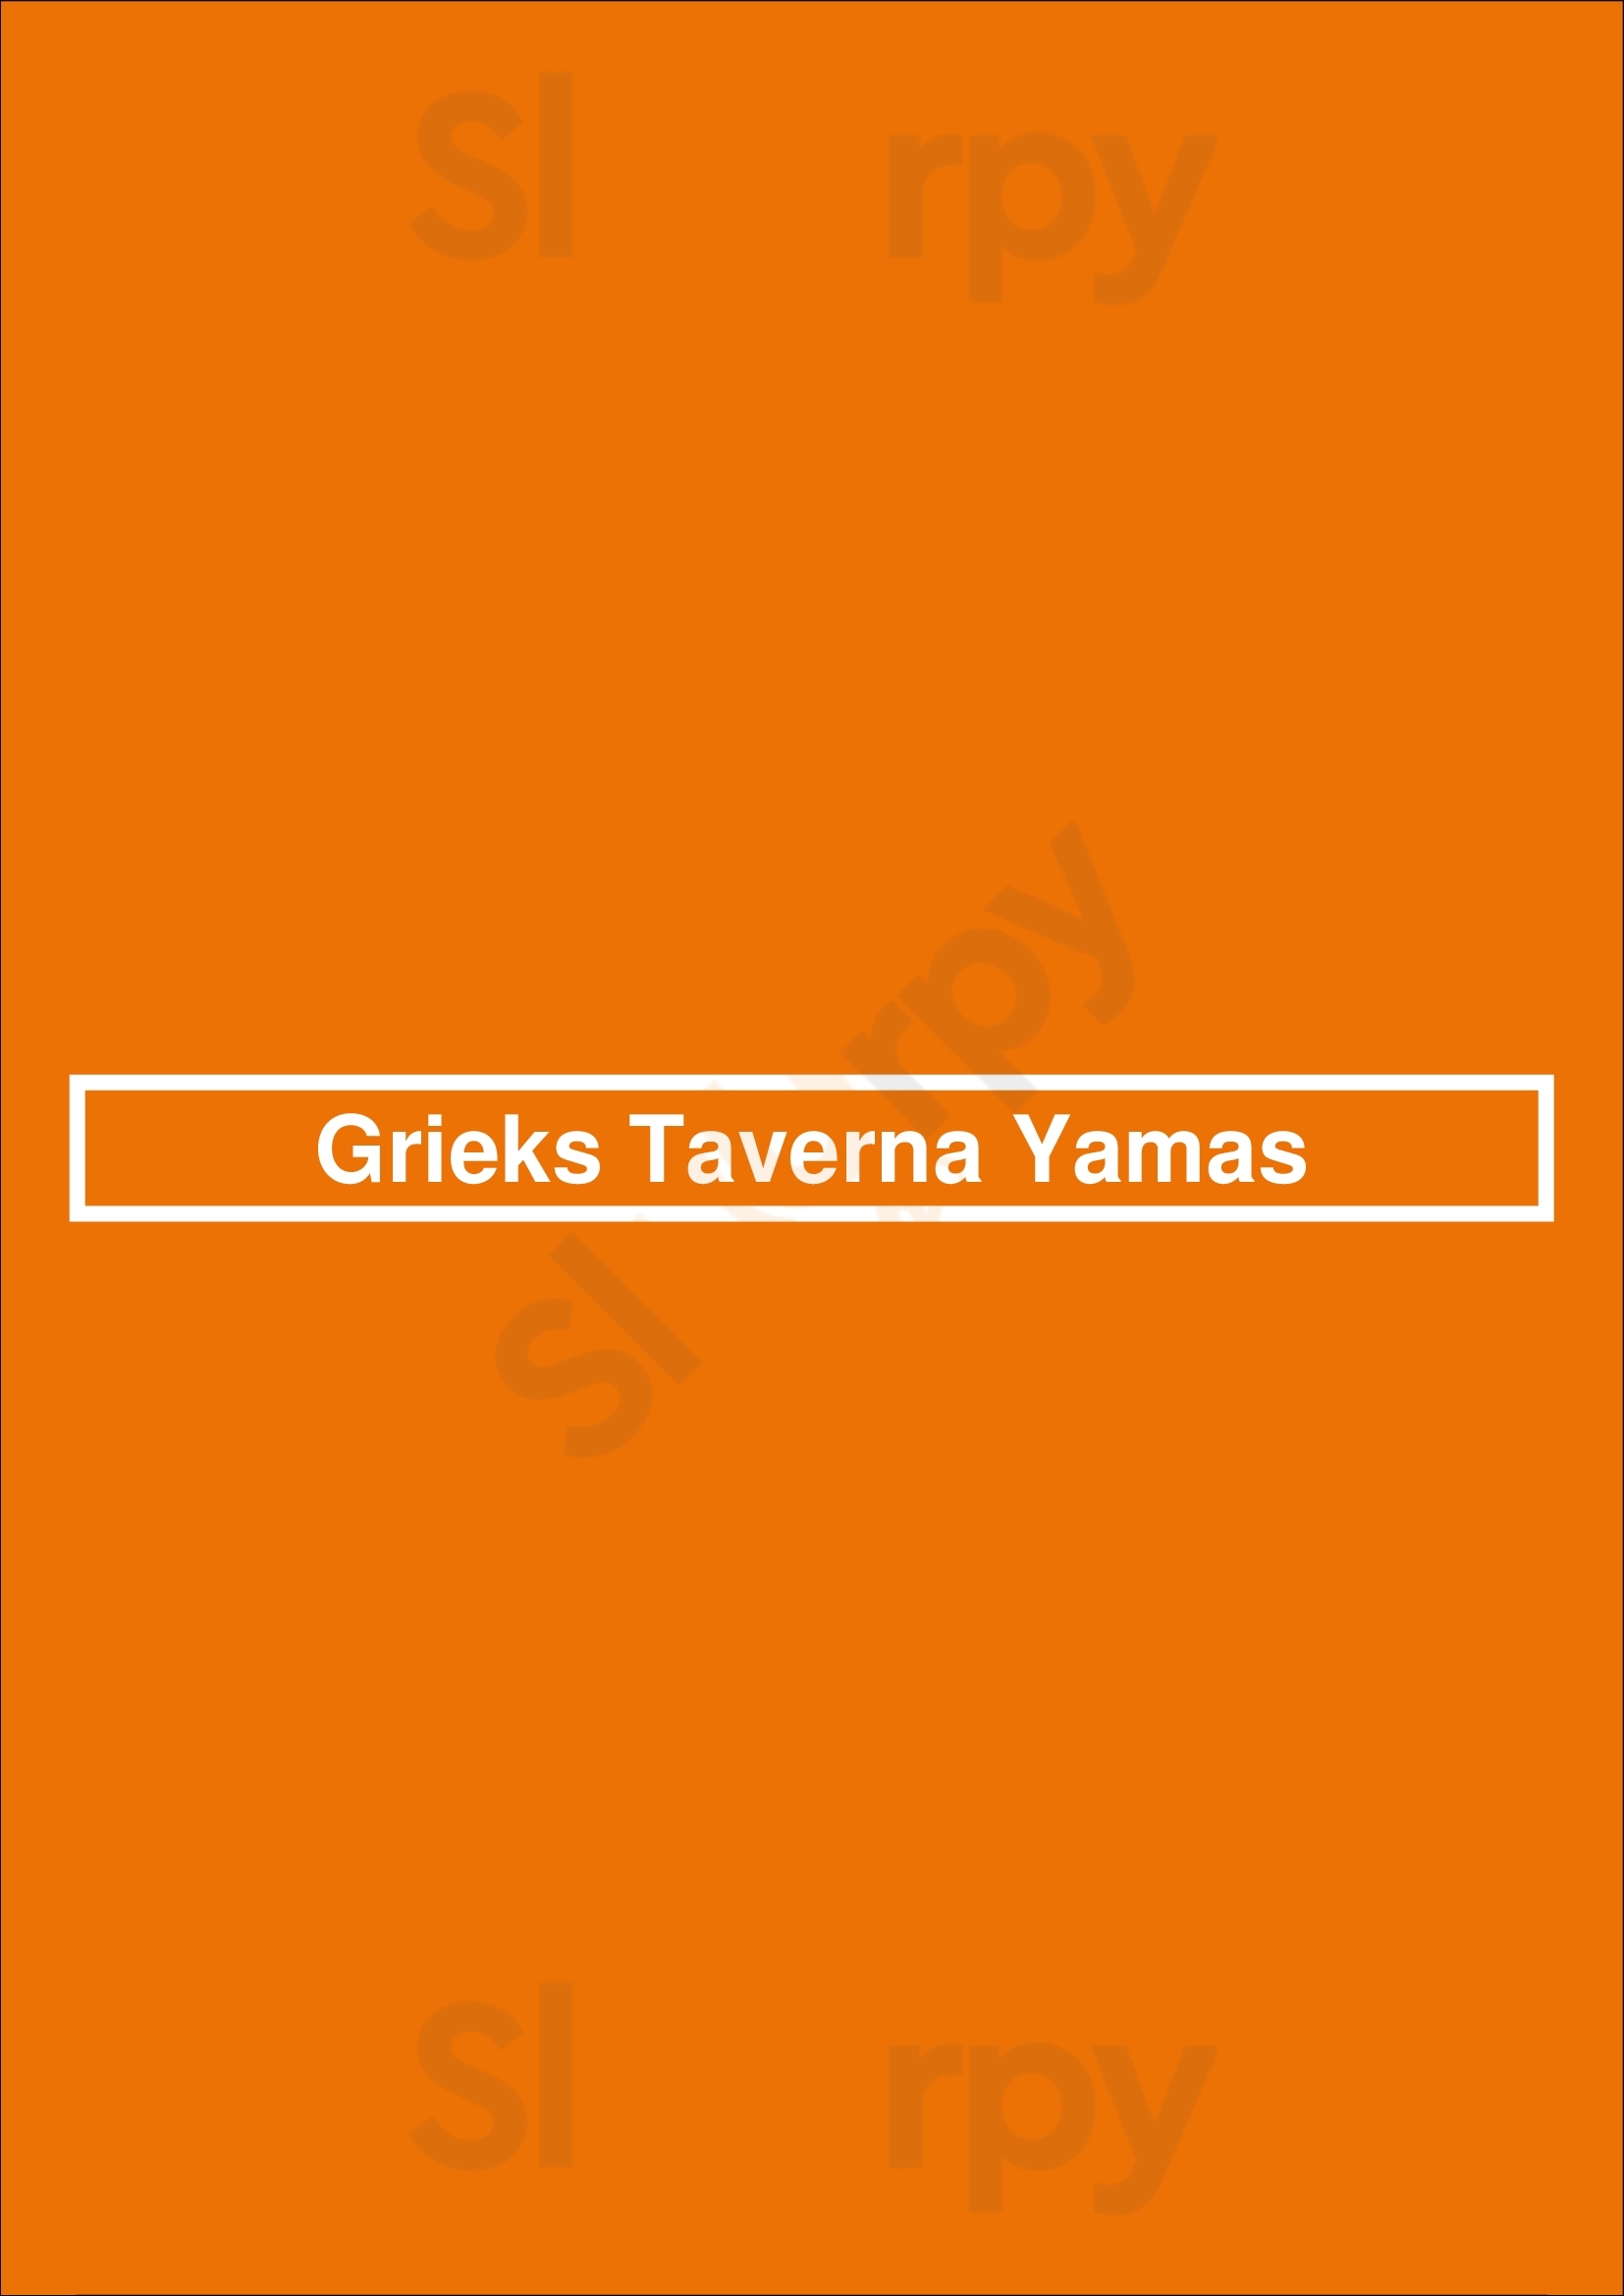 Grieks Taverna Yamas De Bilt Menu - 1